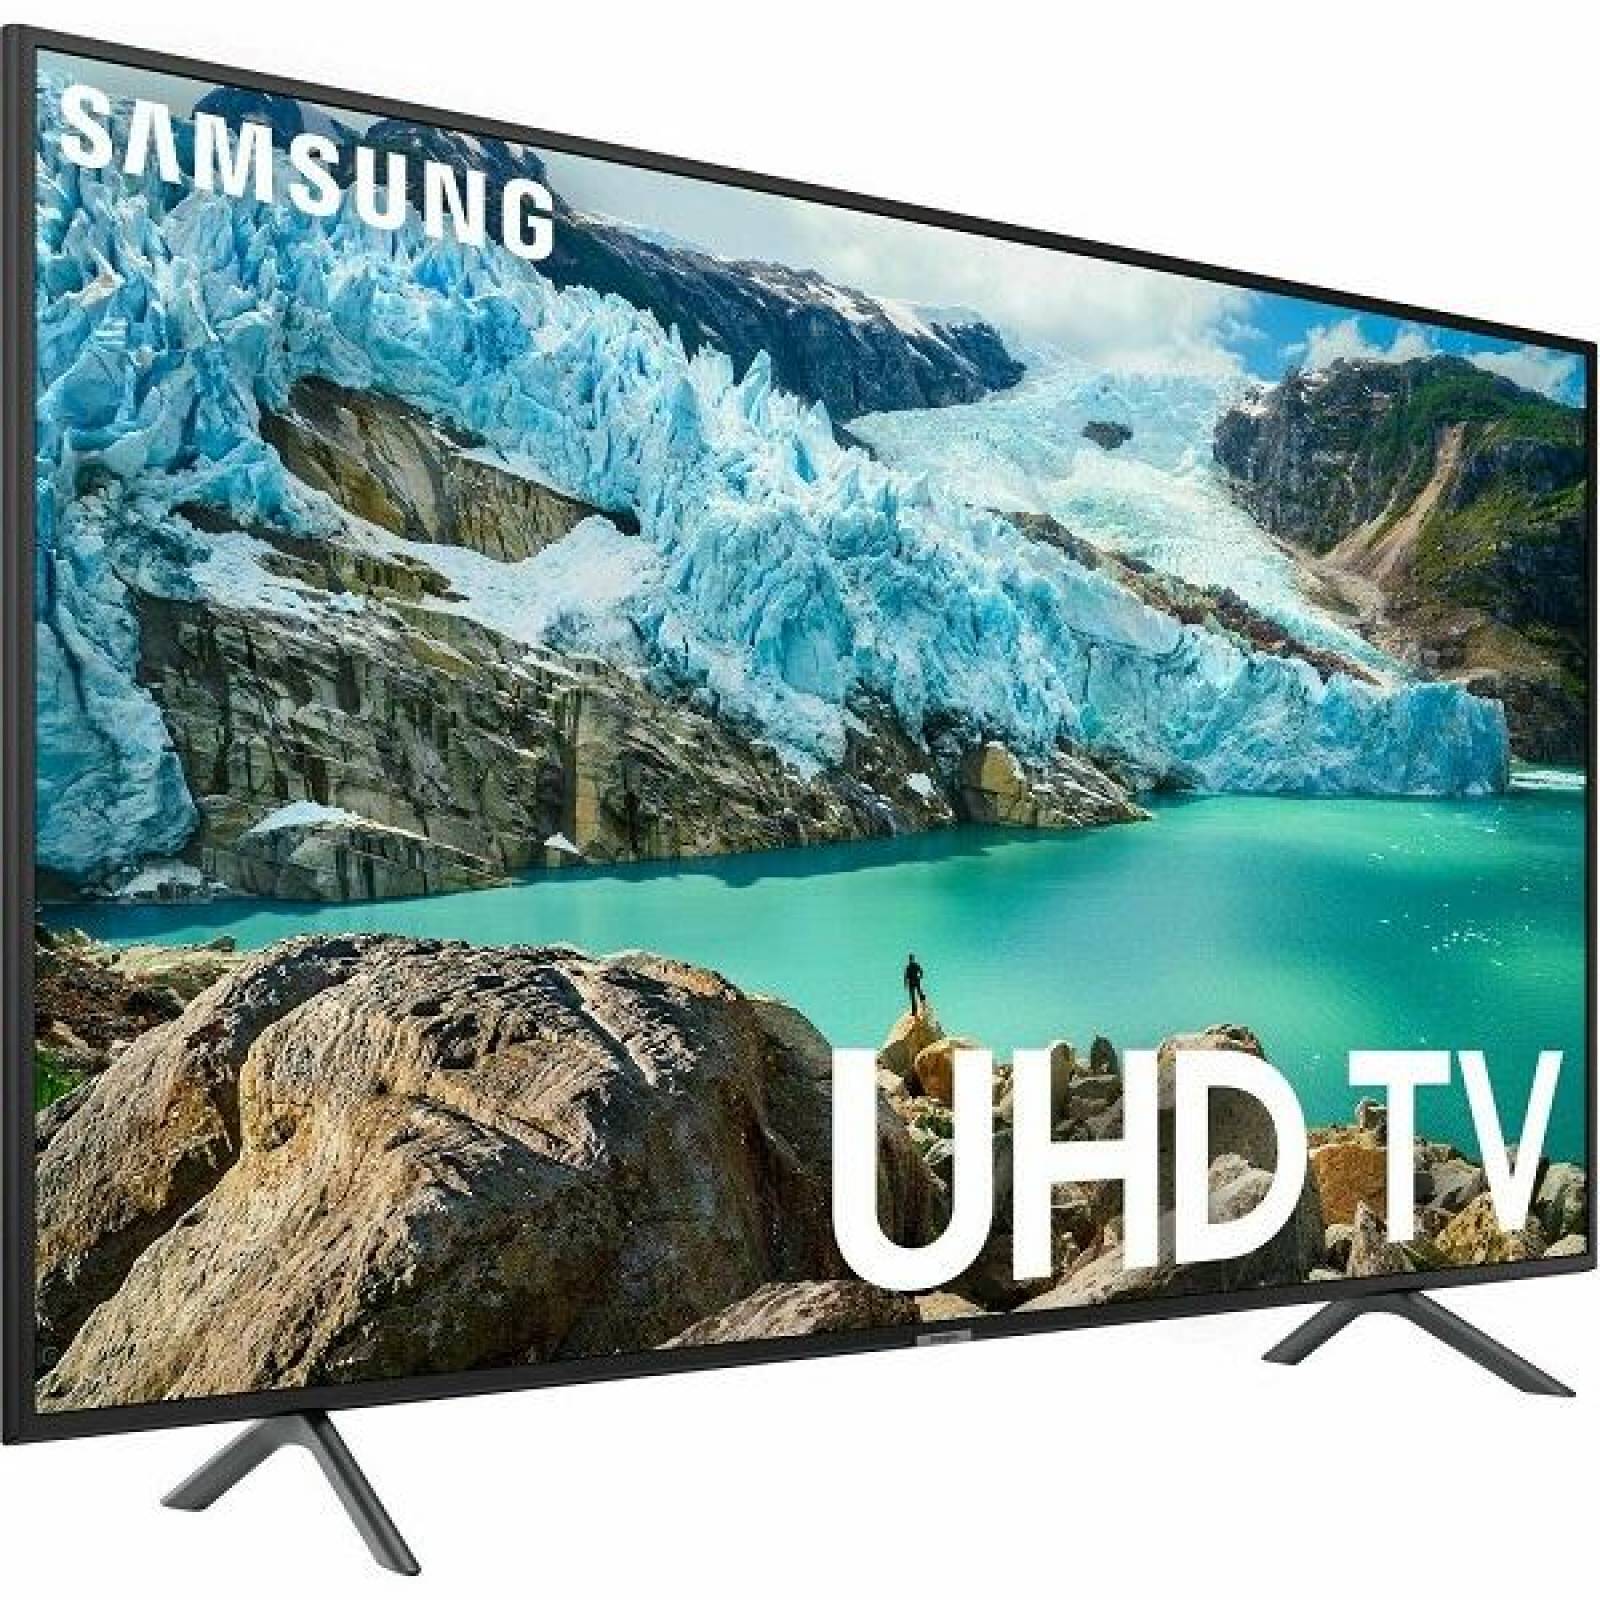 Smart TV Samsung 55 4K UHD HDR HDMI PureColor UN55RU7100